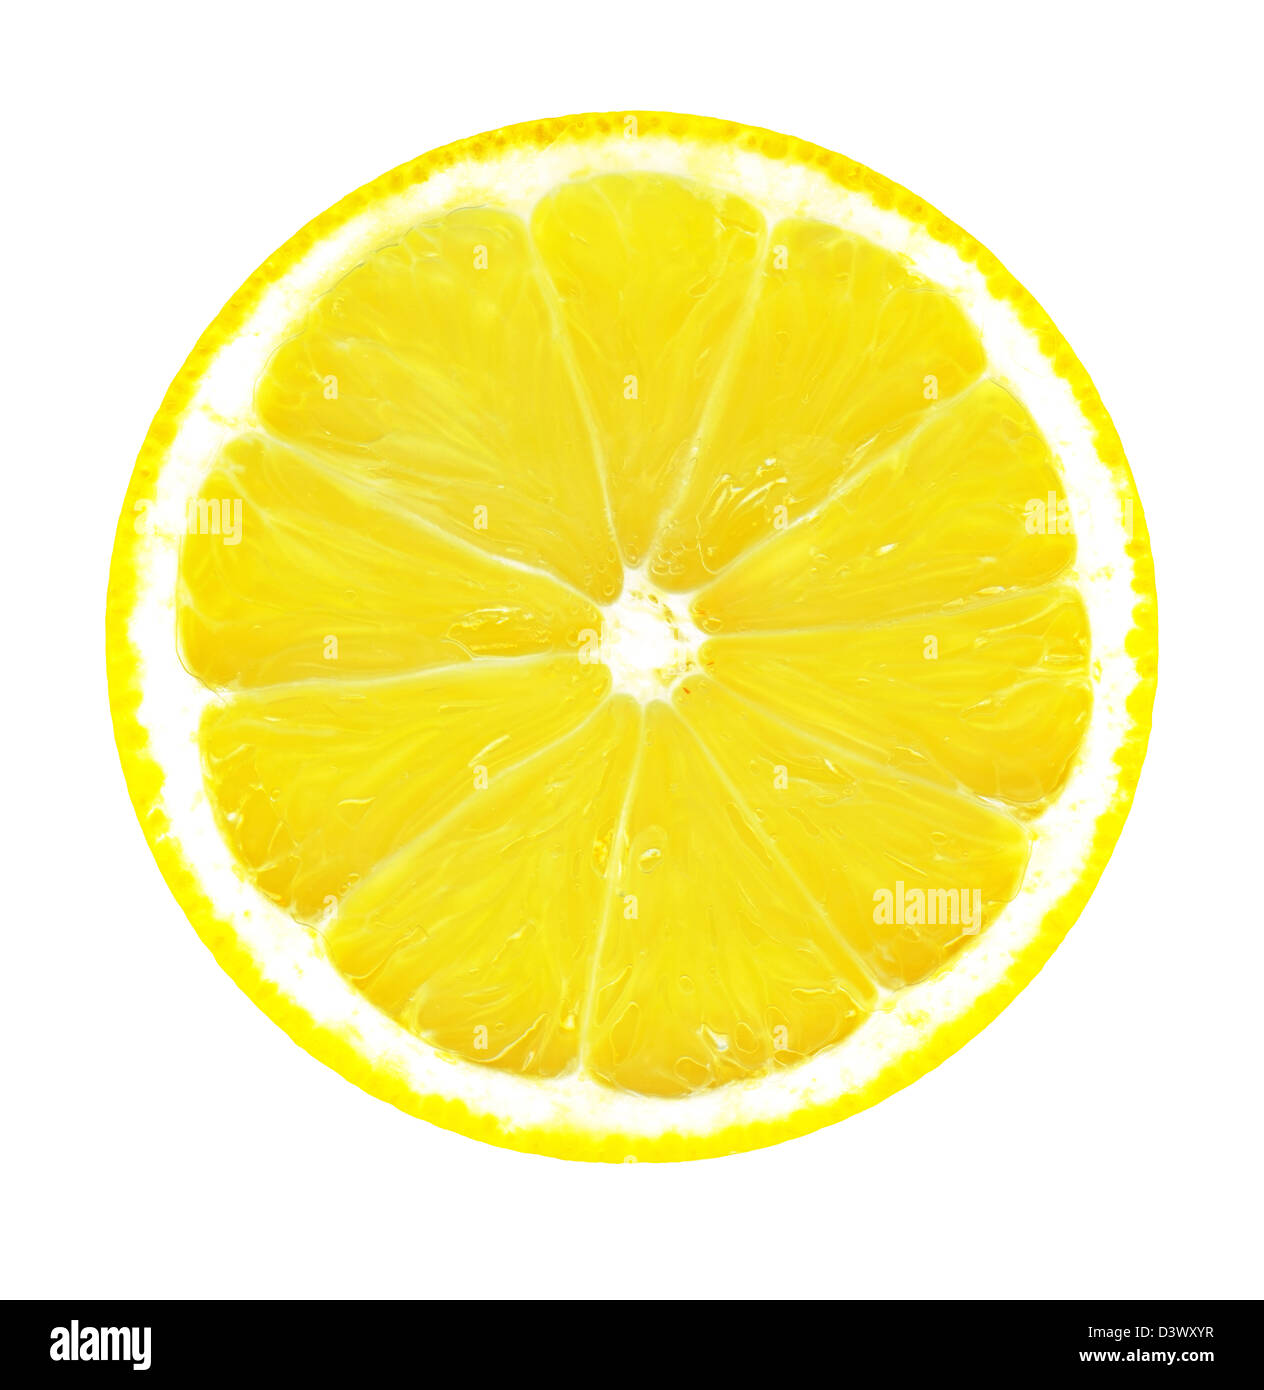 big slice of fresh lemon isolated on white background Stock Photo